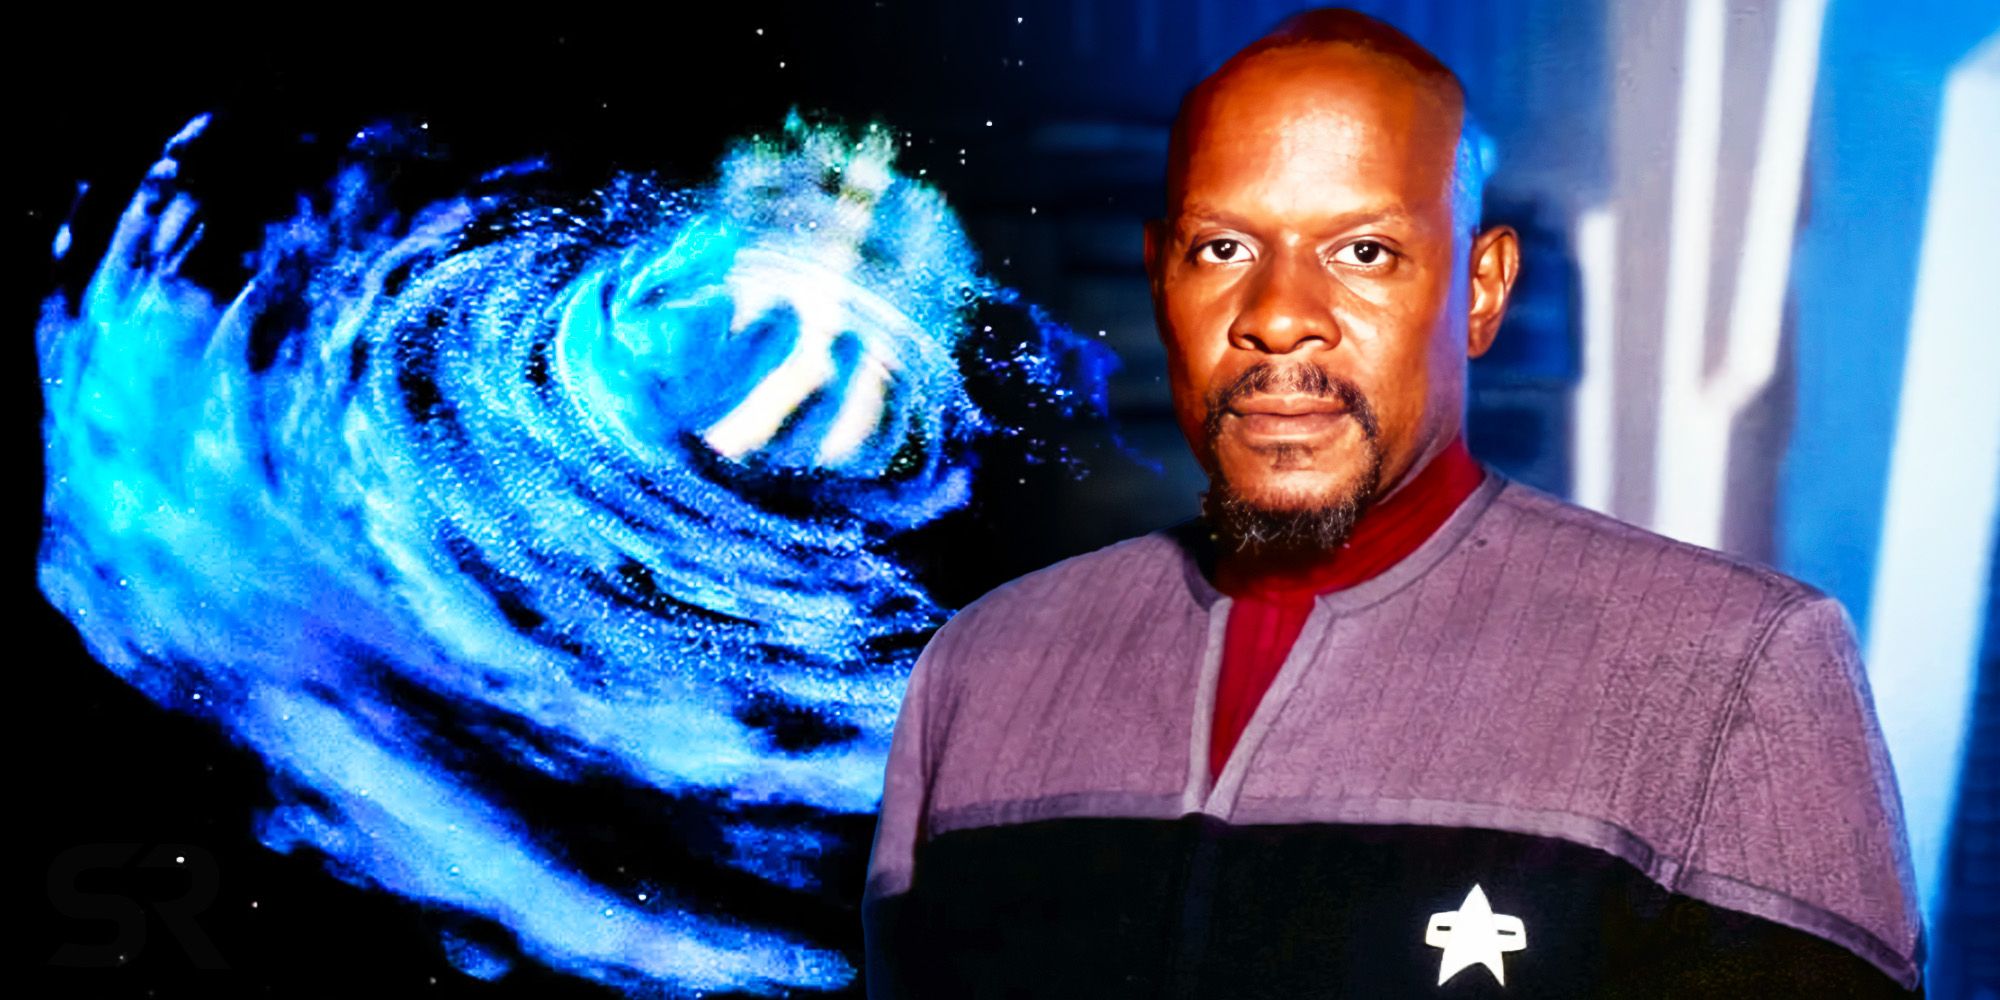 Star Trek confirma el oscuro significado alternativo del nombre de Sisko